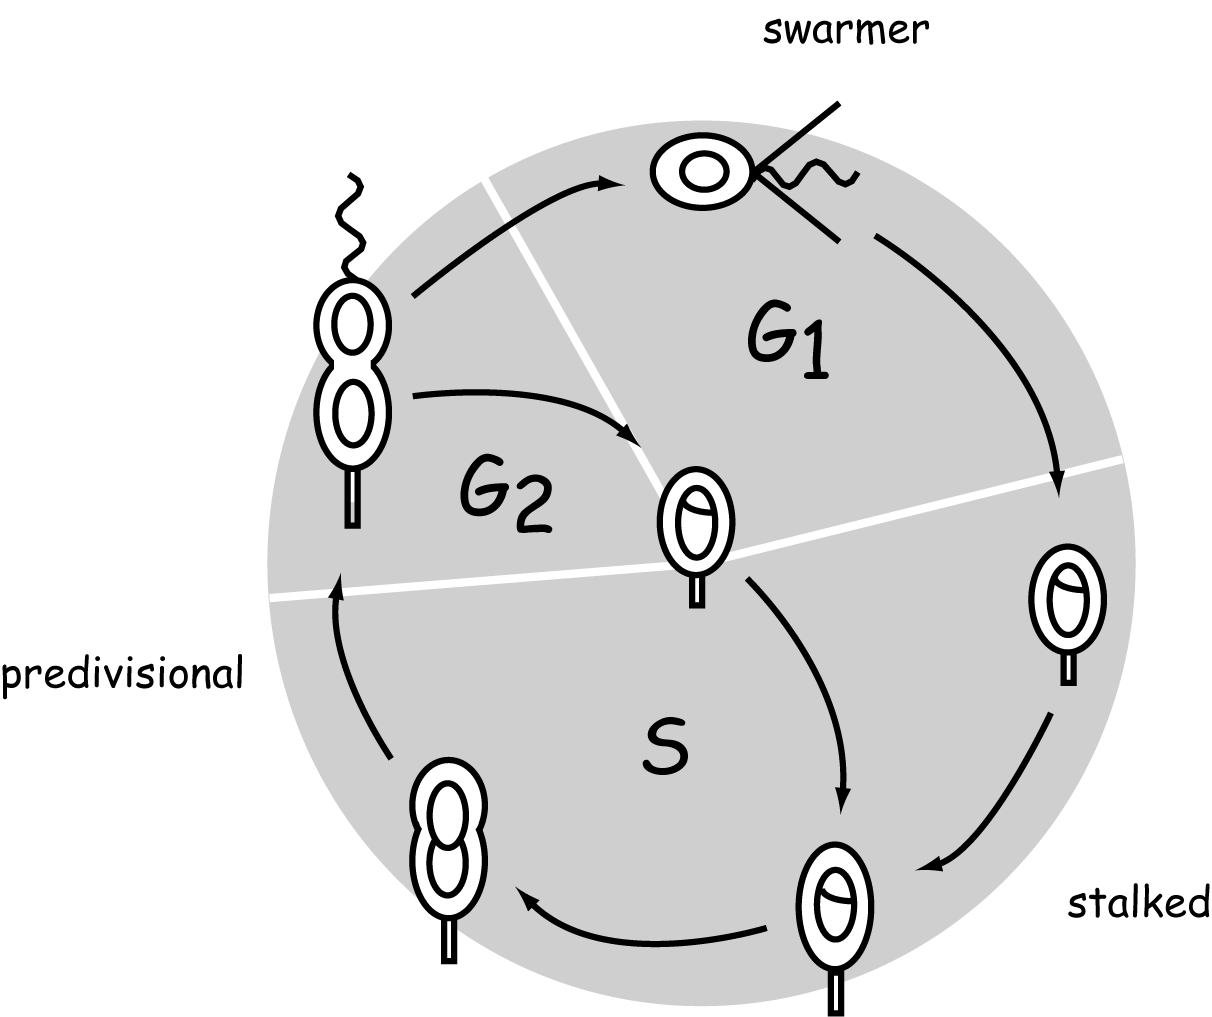 Regolazione del ciclo cellulare nei batteri Caulobacter crescentus Stalked cell: - Presenza di un peduncolo con terminazione